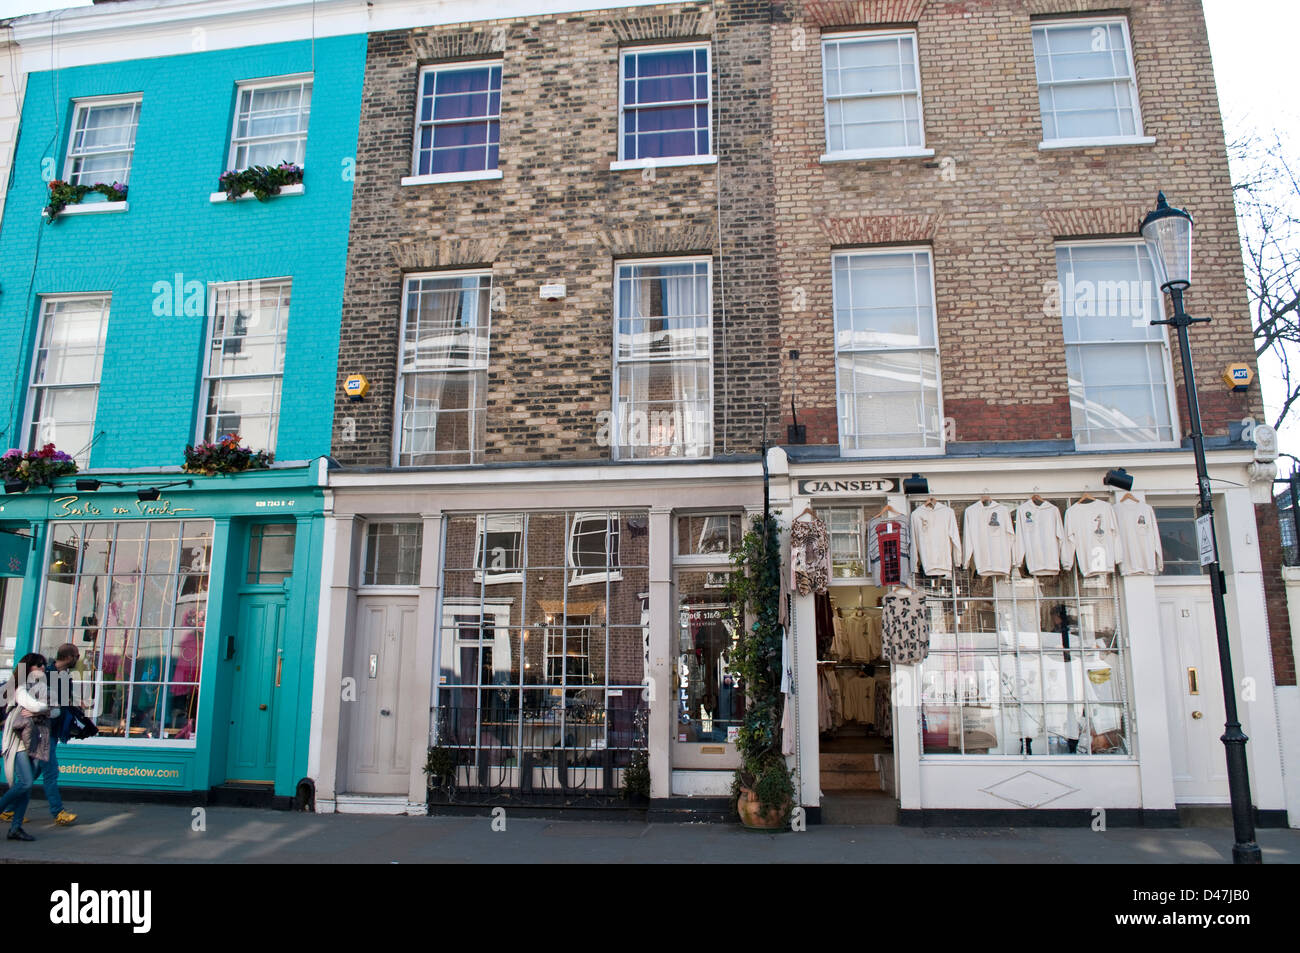 Chambre et boutique, Portobello Road, Notting Hill, London, W11, UK Banque D'Images